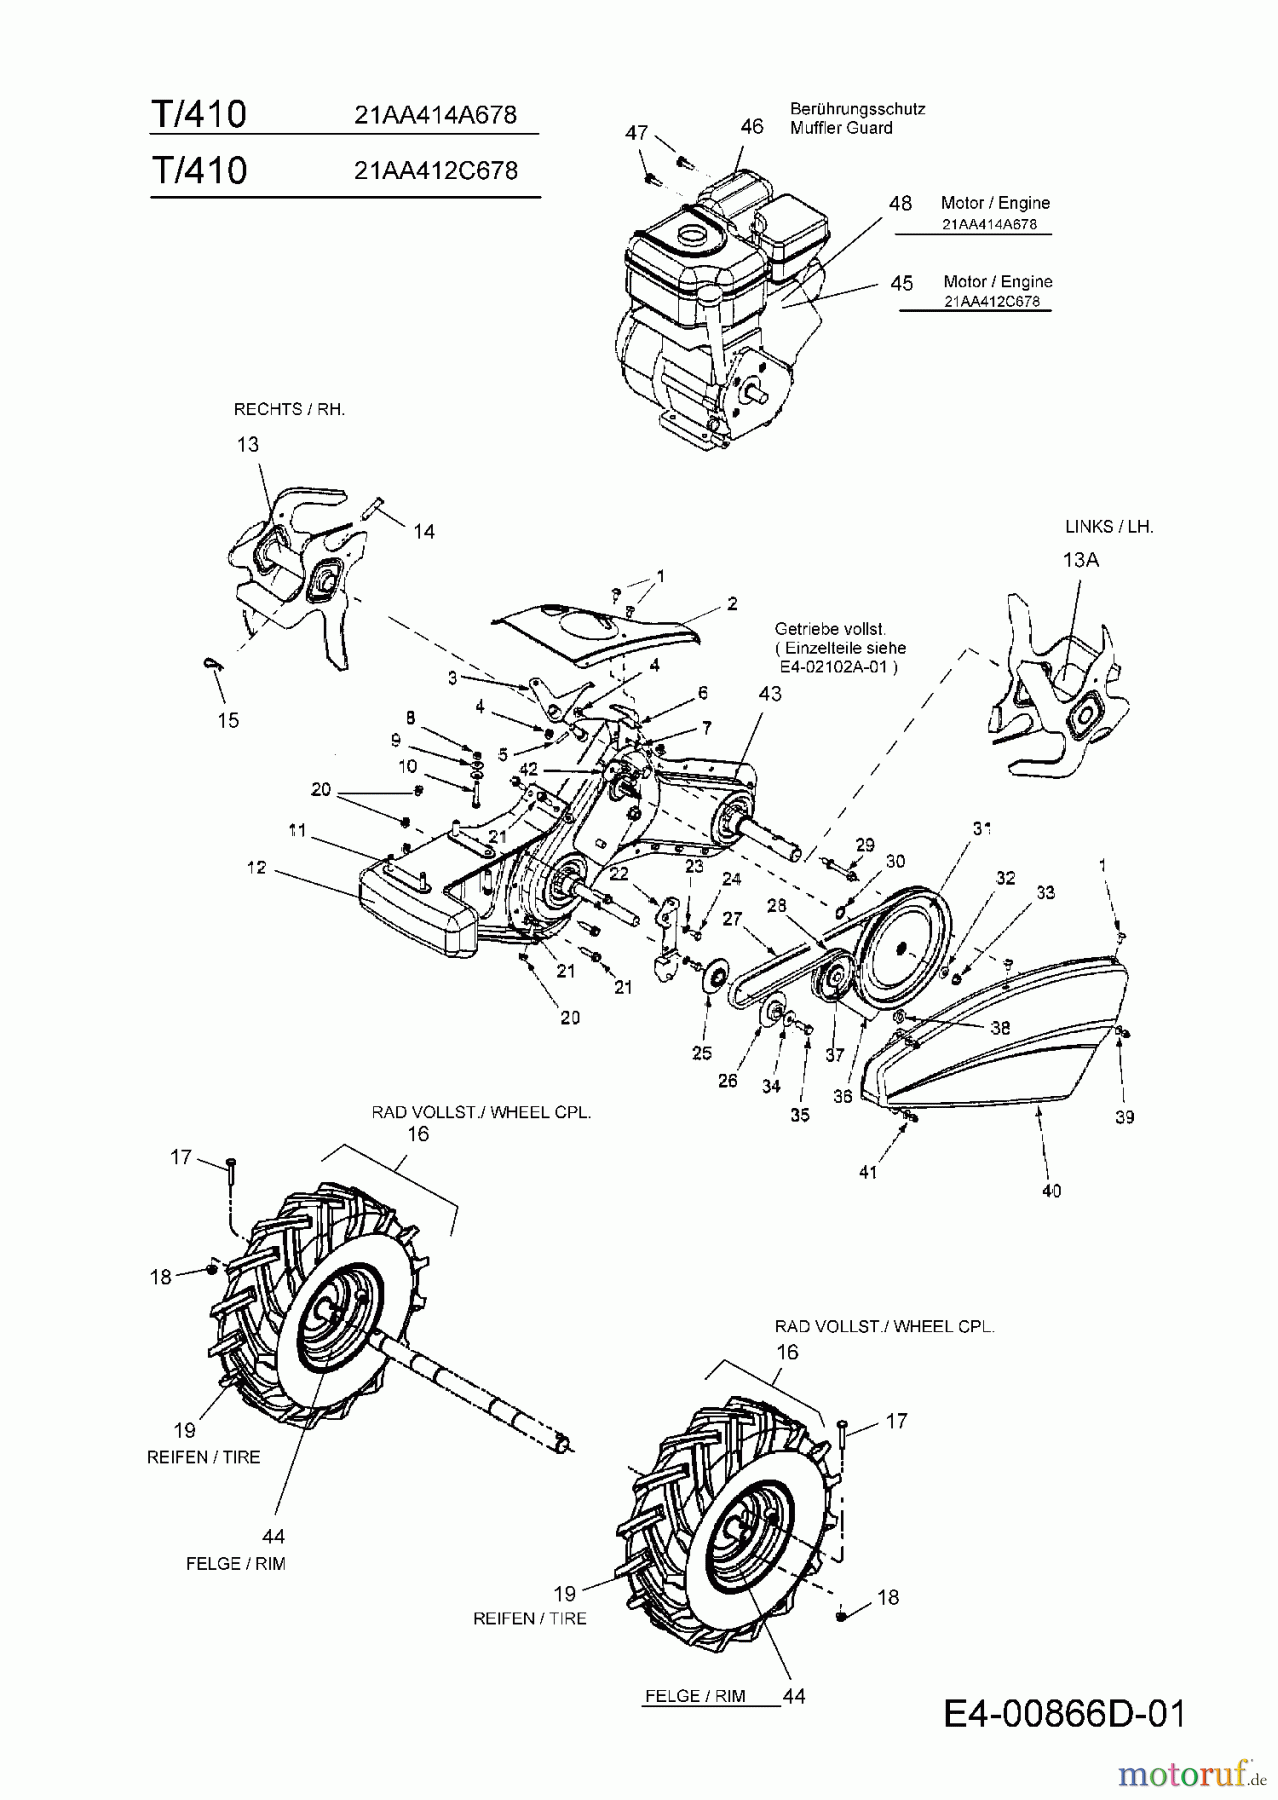  MTD Motorhacken T/410 21AA414A678  (2009) Getriebe, Räder, Hacksterne